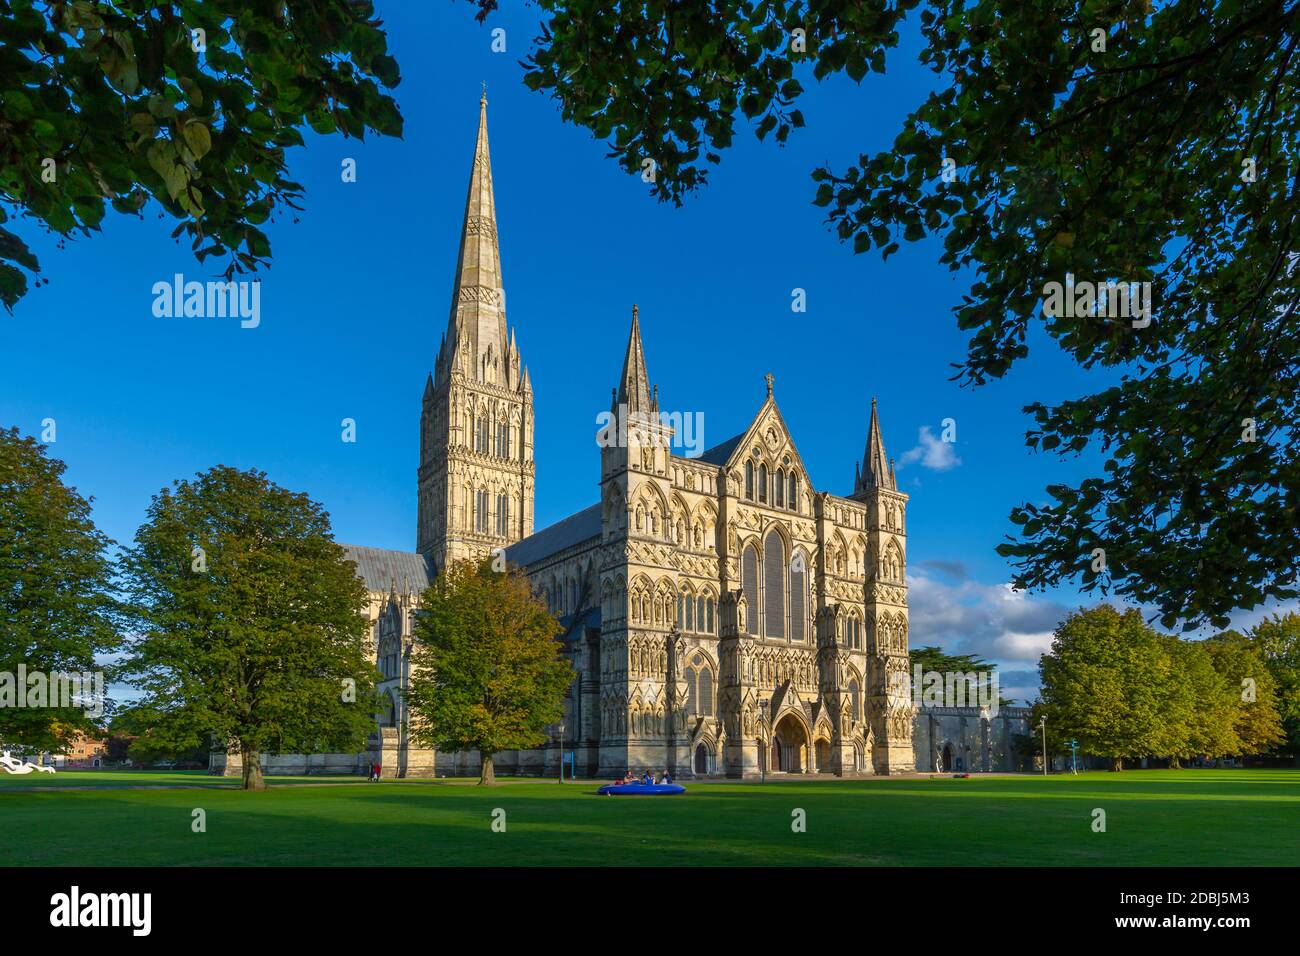 Vue sur la cathédrale de Salisbury entourée d'arbres, Salisbury, Wiltshire, Angleterre, Royaume-Uni, Europe Banque D'Images